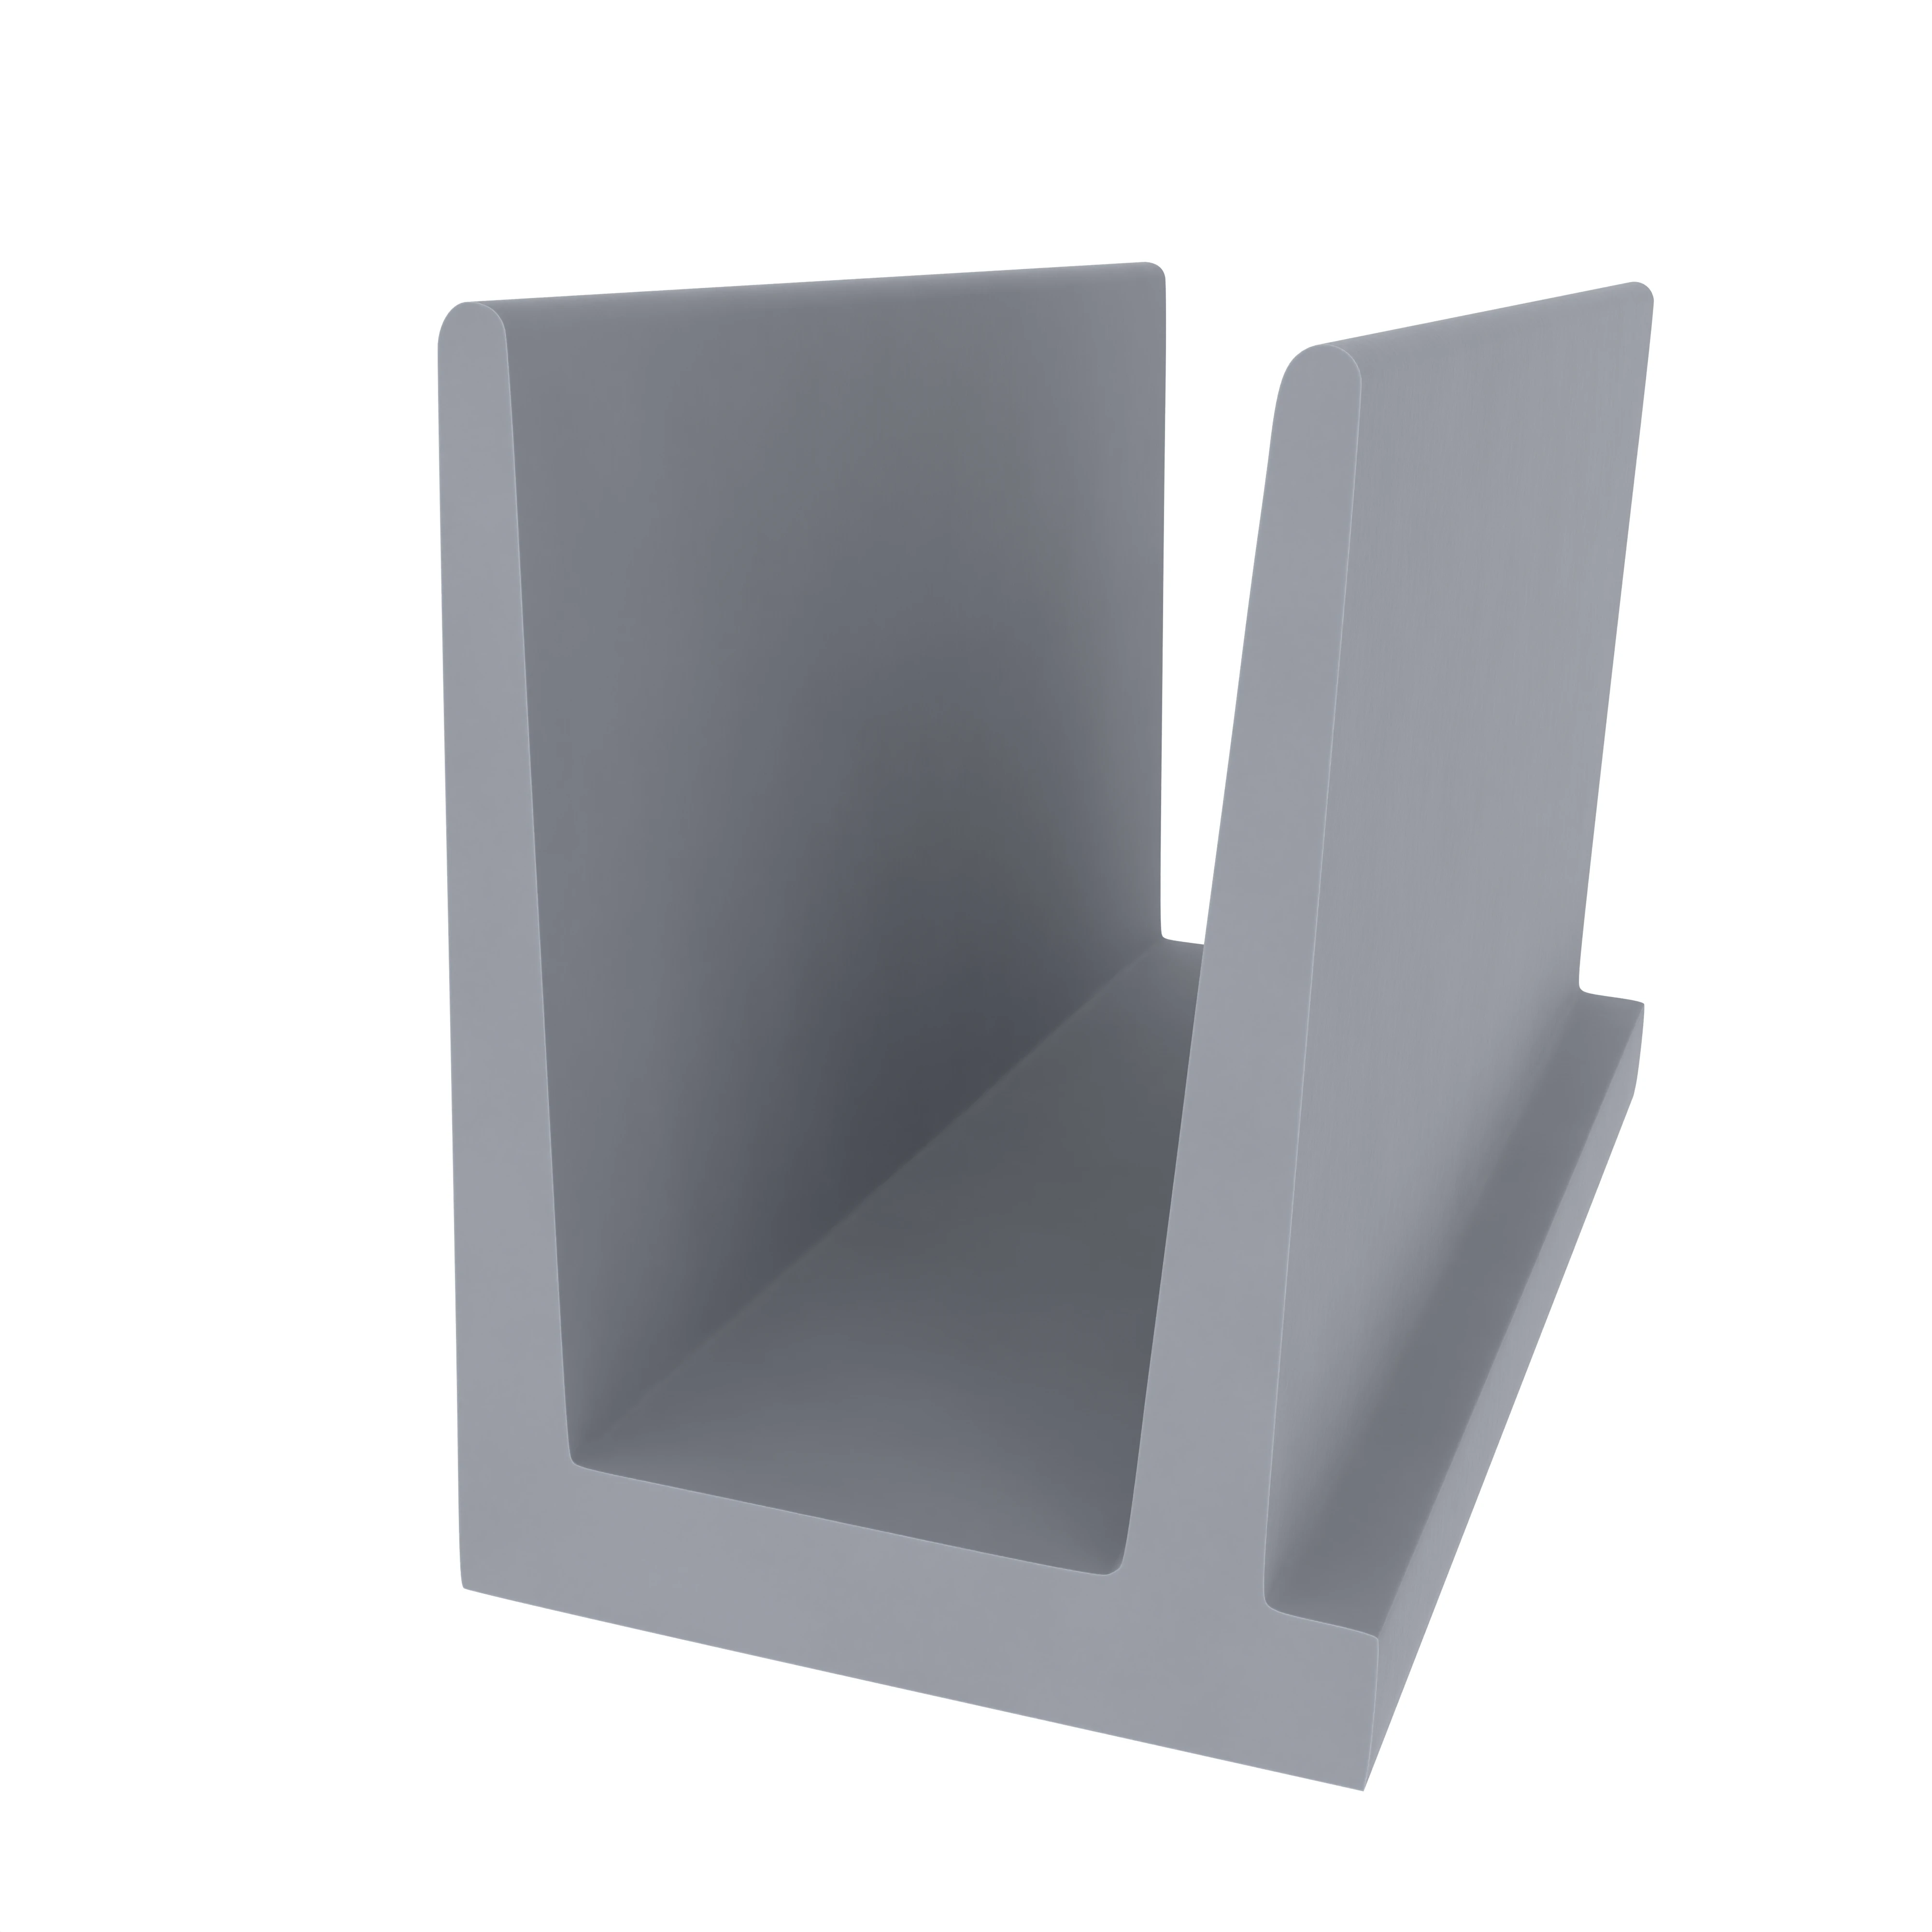 Holzzargendichtung für Haustüren | 15 mm Höhe | Farbe: grau